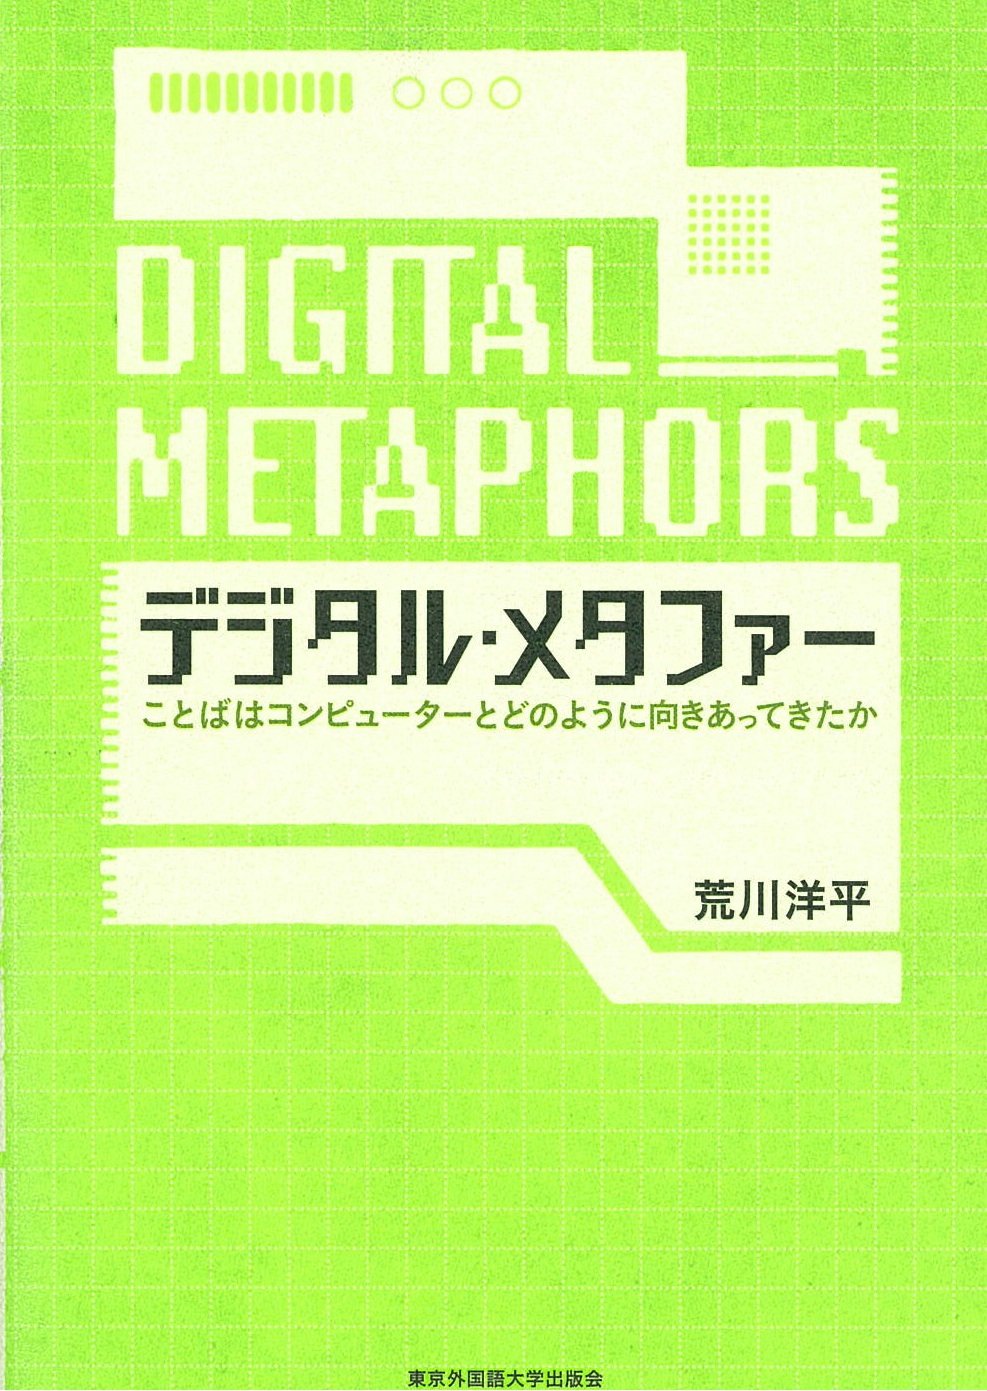 デジタル・メタファー -ことばはコンピューターとどのように向きあってきたか-　東京外国語大学出版会